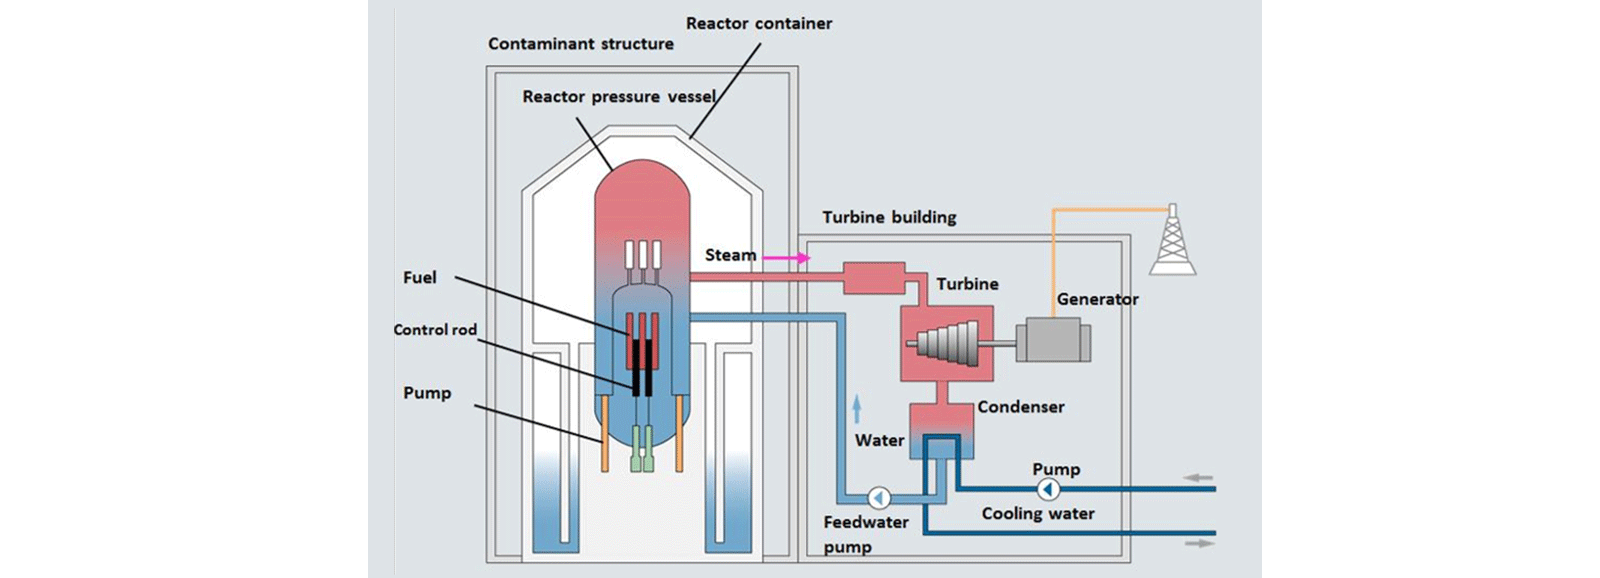 Centrais nucleares: reator de água em ebulição (BWR)